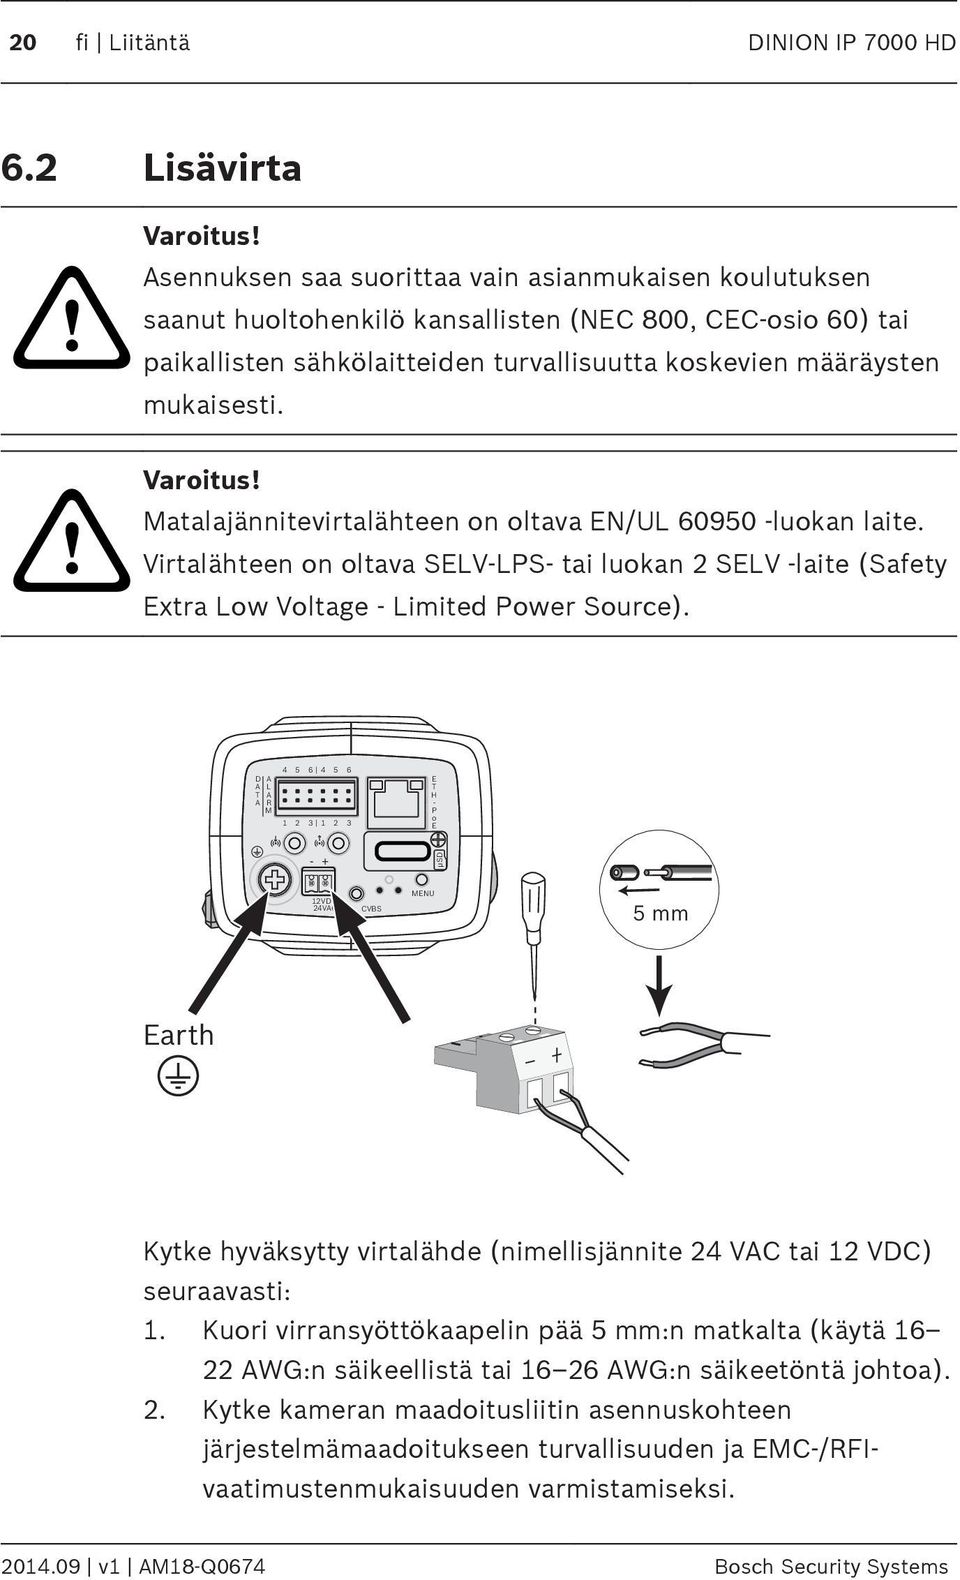 Varoitus! Matalajännitevirtalähteen on oltava EN/UL 60950 -luokan laite. Virtalähteen on oltava SELV-LPS- tai luokan 2 SELV -laite (Safety Extra Low Voltage - Limited Power Source).